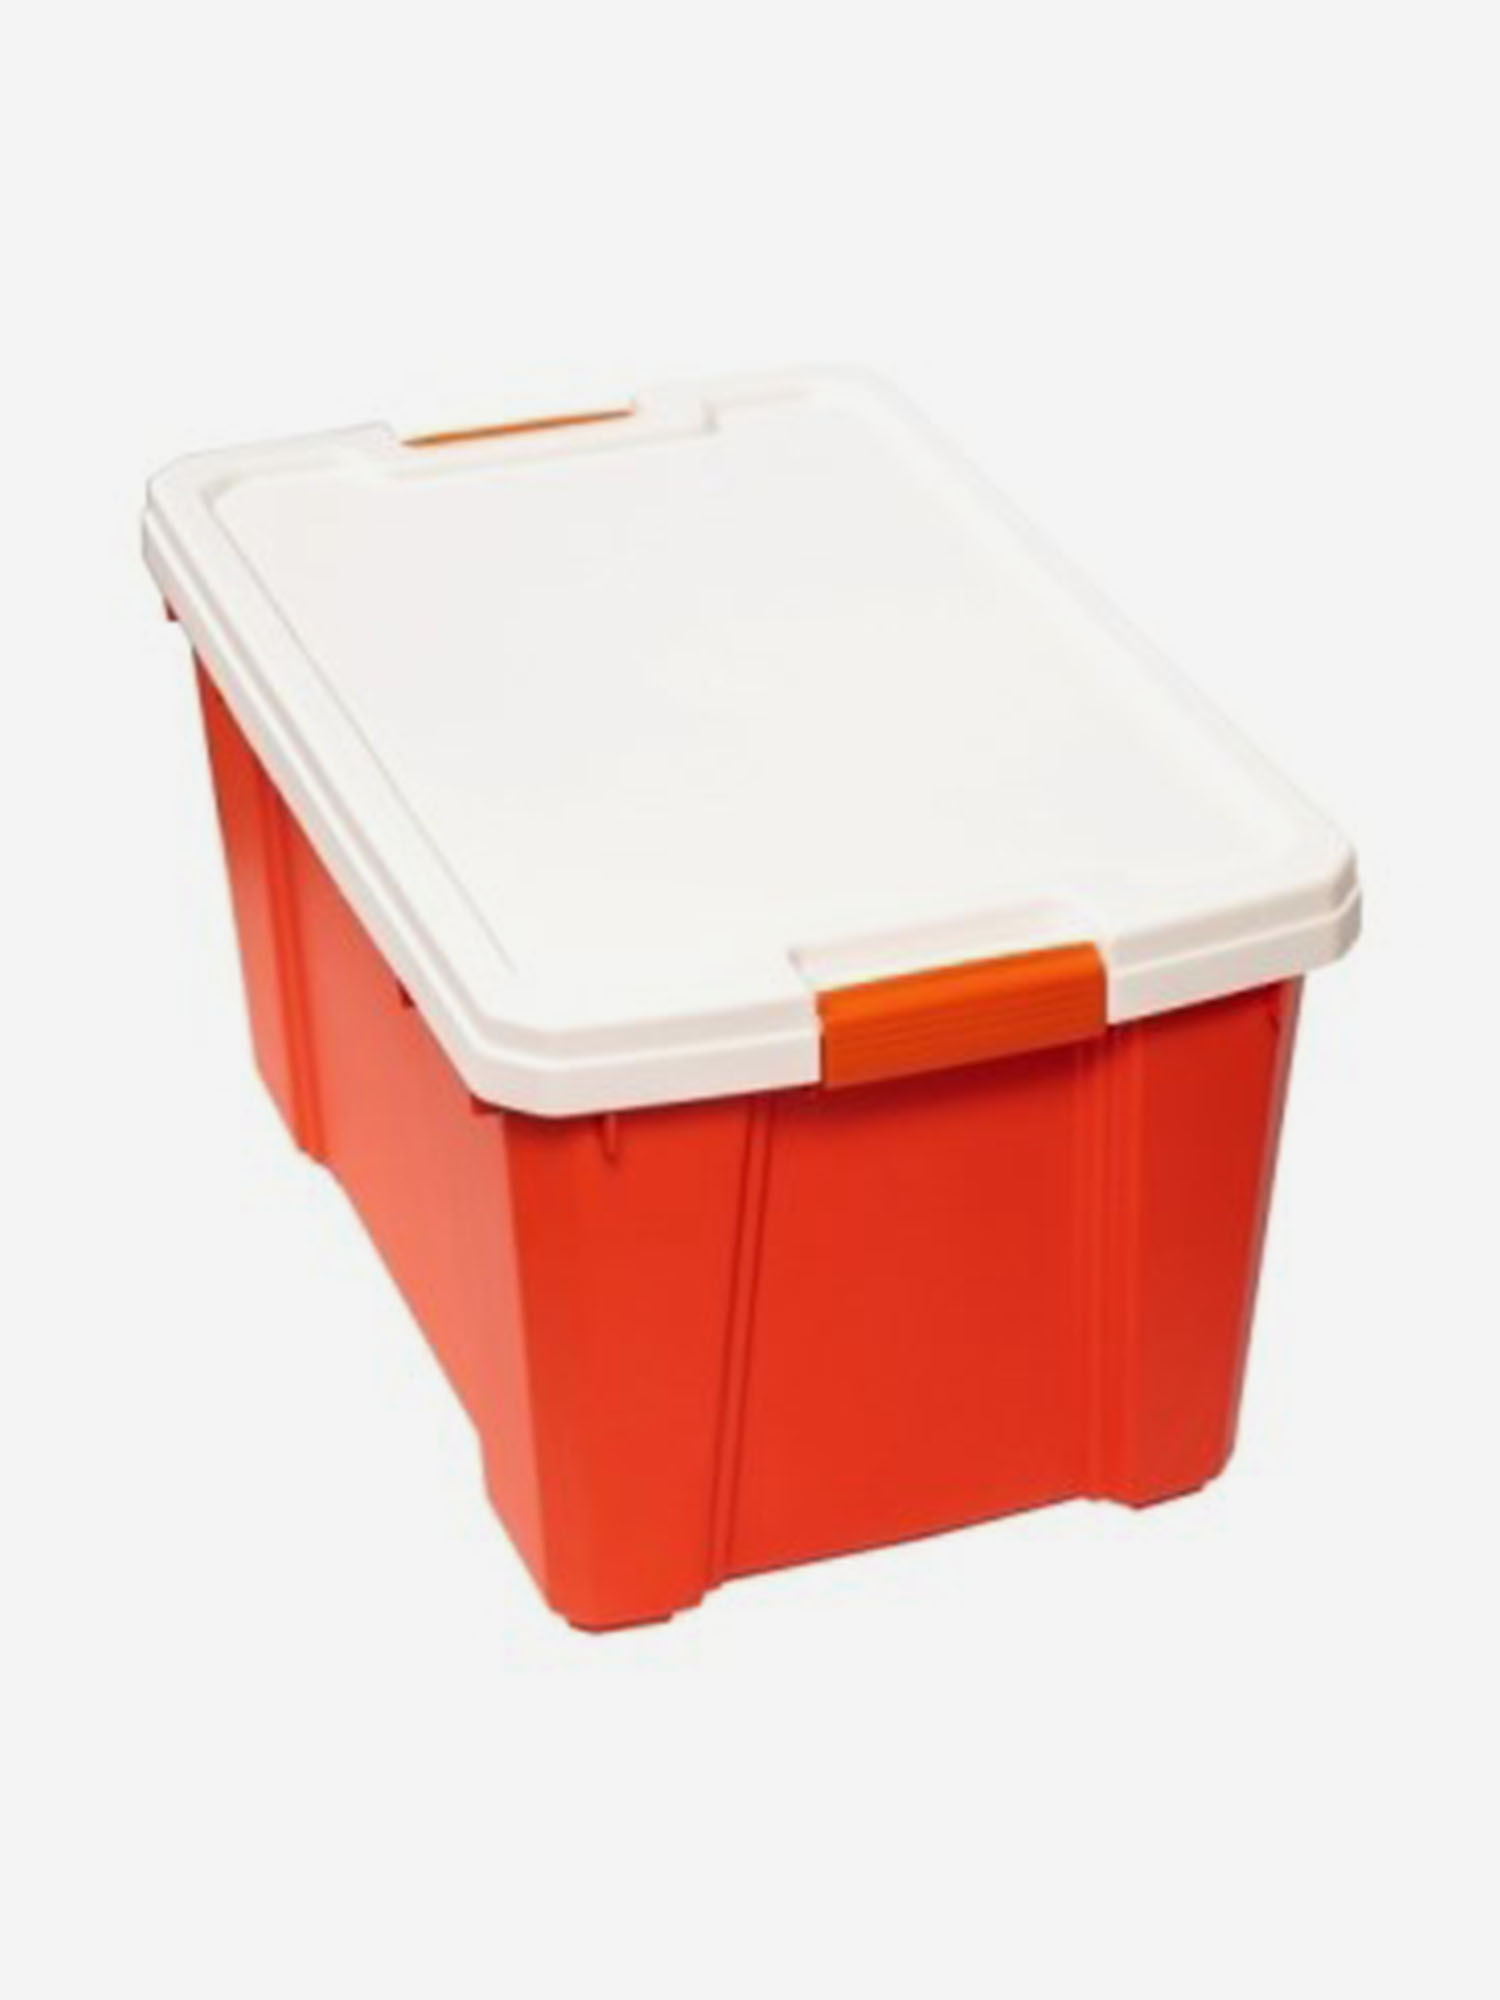 Ящик IRIS OHYAMA для x ранения, белый/оранжевый, 56 л, 59,1 x 38,8 x 33,2 см, Оранжевый